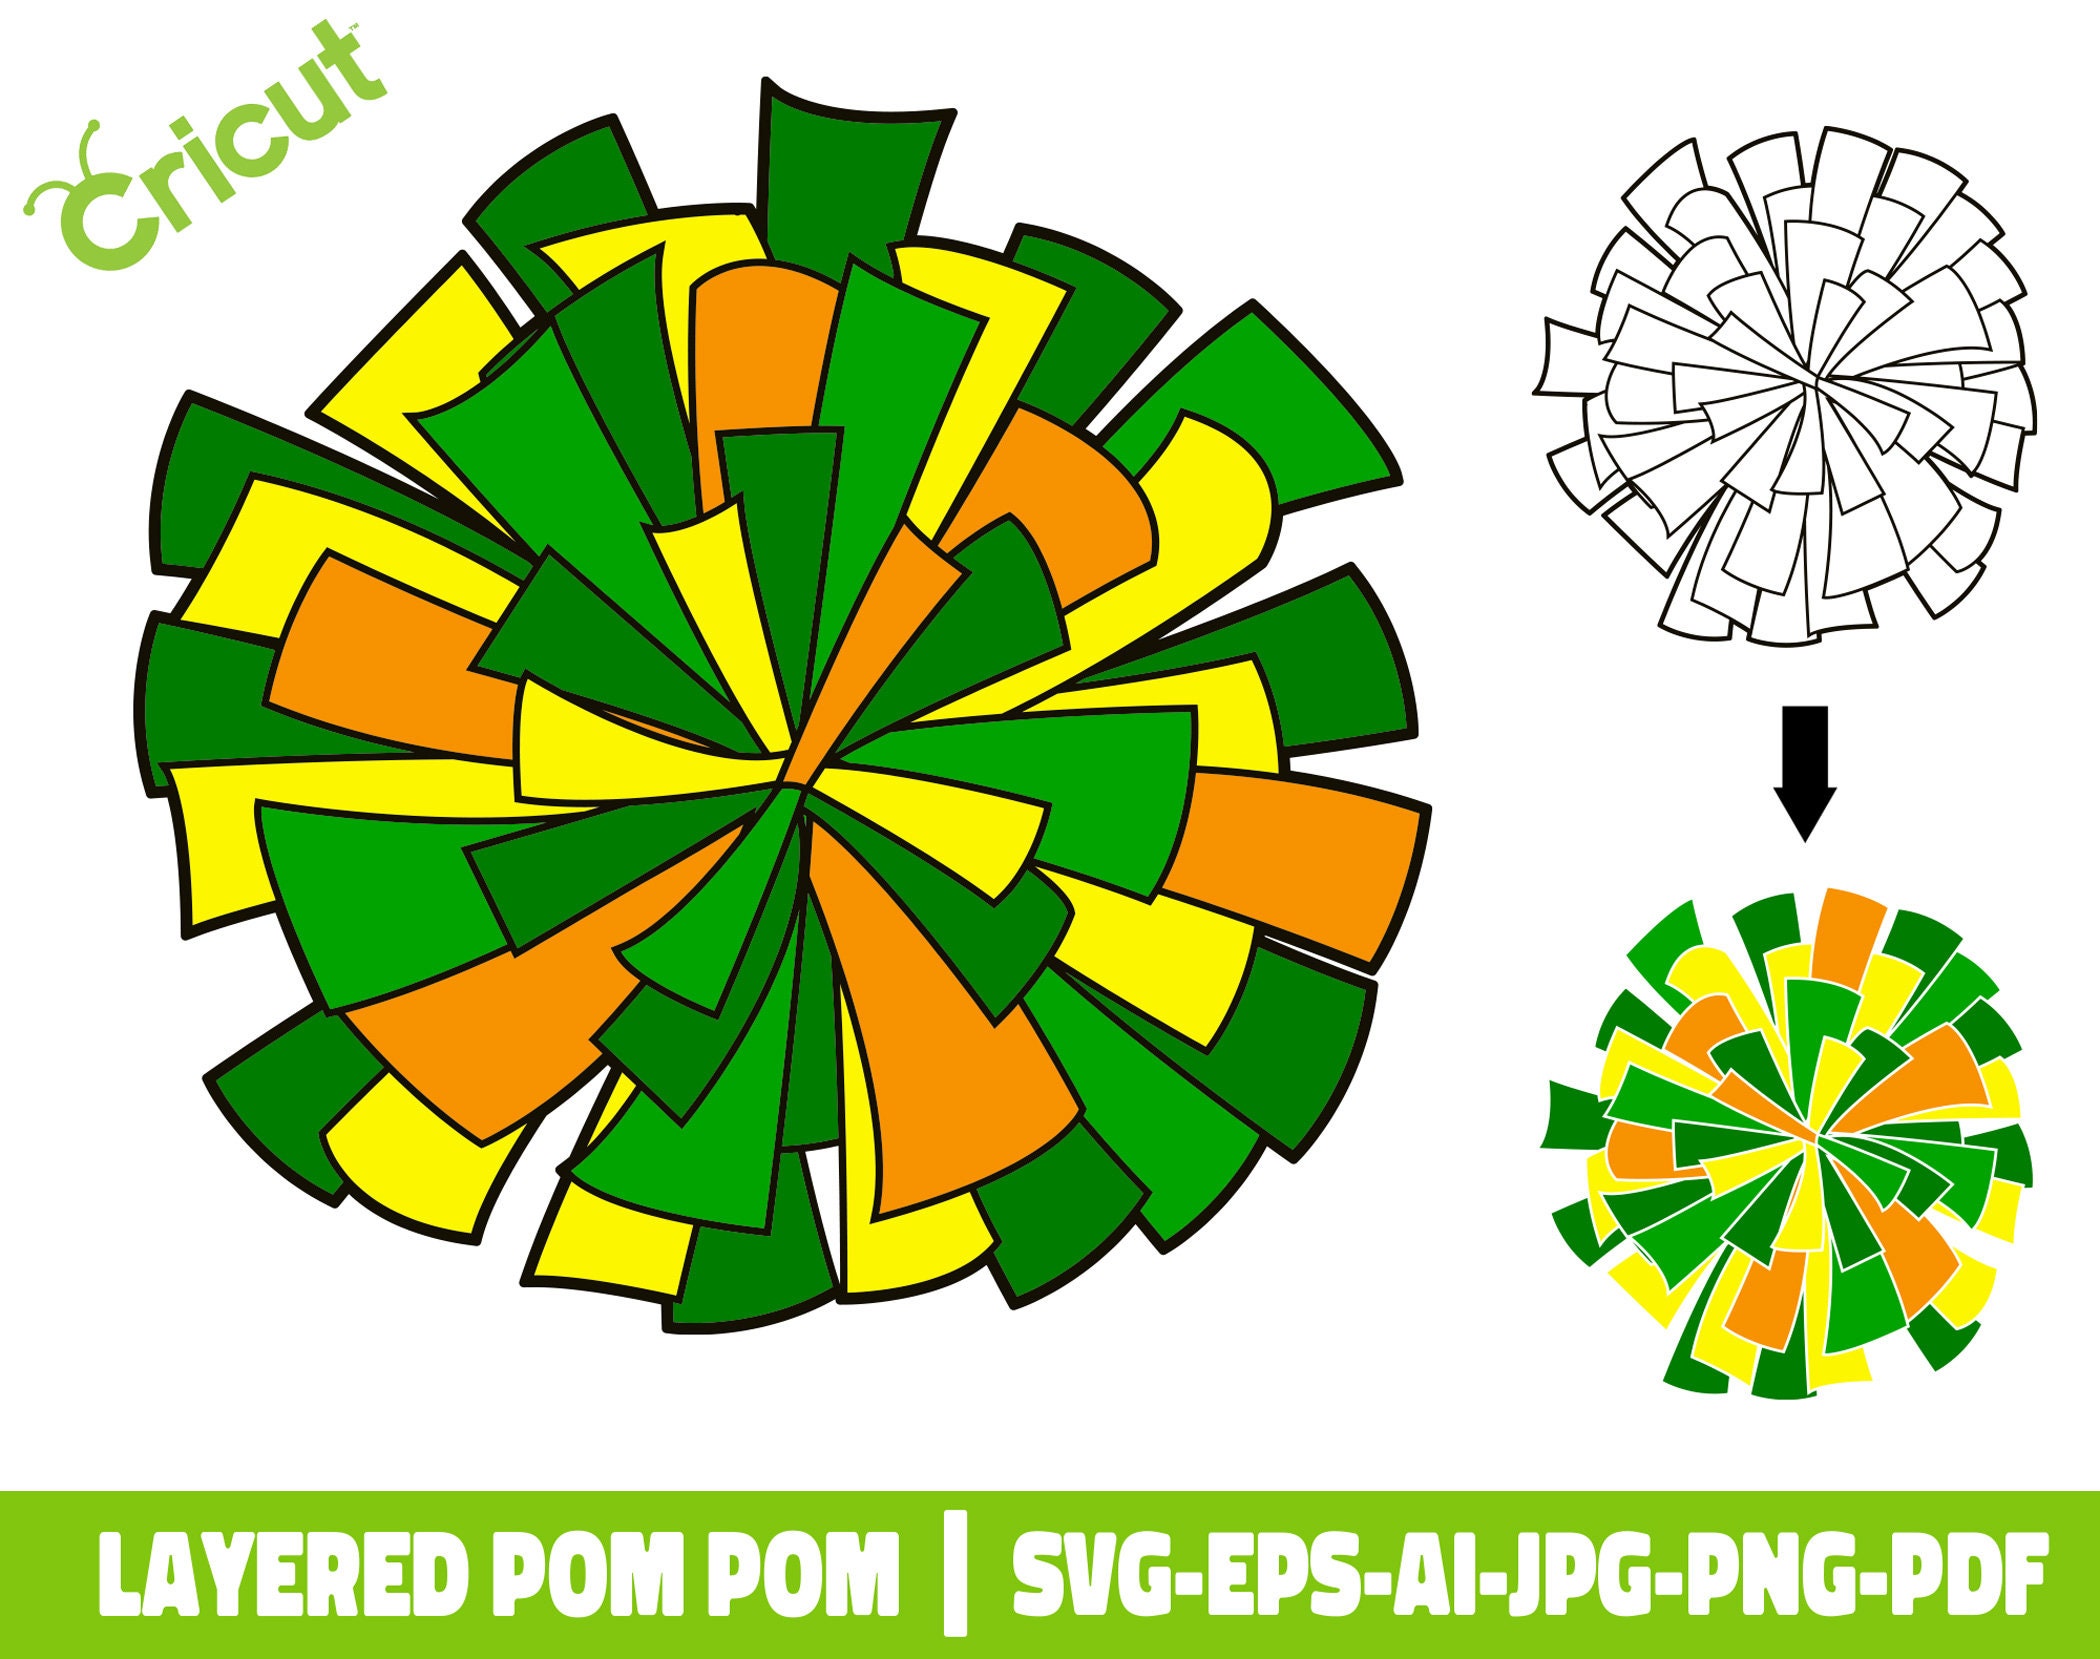 Green Pom Pom PNG Images & PSDs for Download